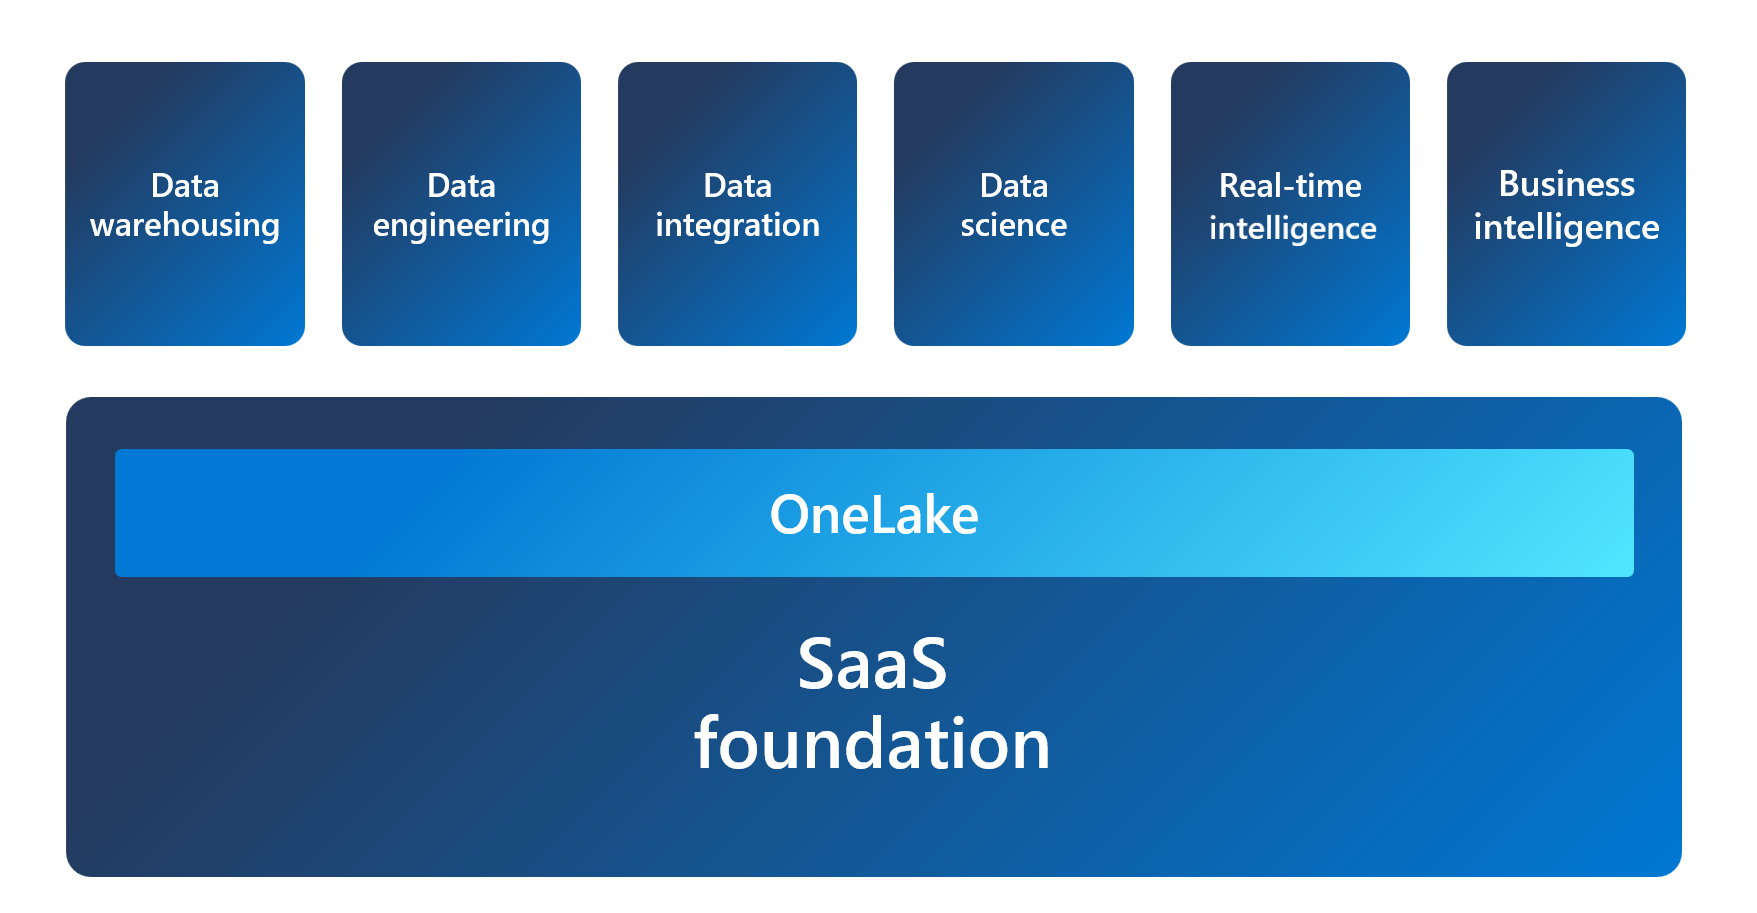 Zrzut ekranu przedstawiający architekturę sieci szkieletowej z usługą OneLake jako podstawą, z każdym środowiskiem opartym na bazie danych.